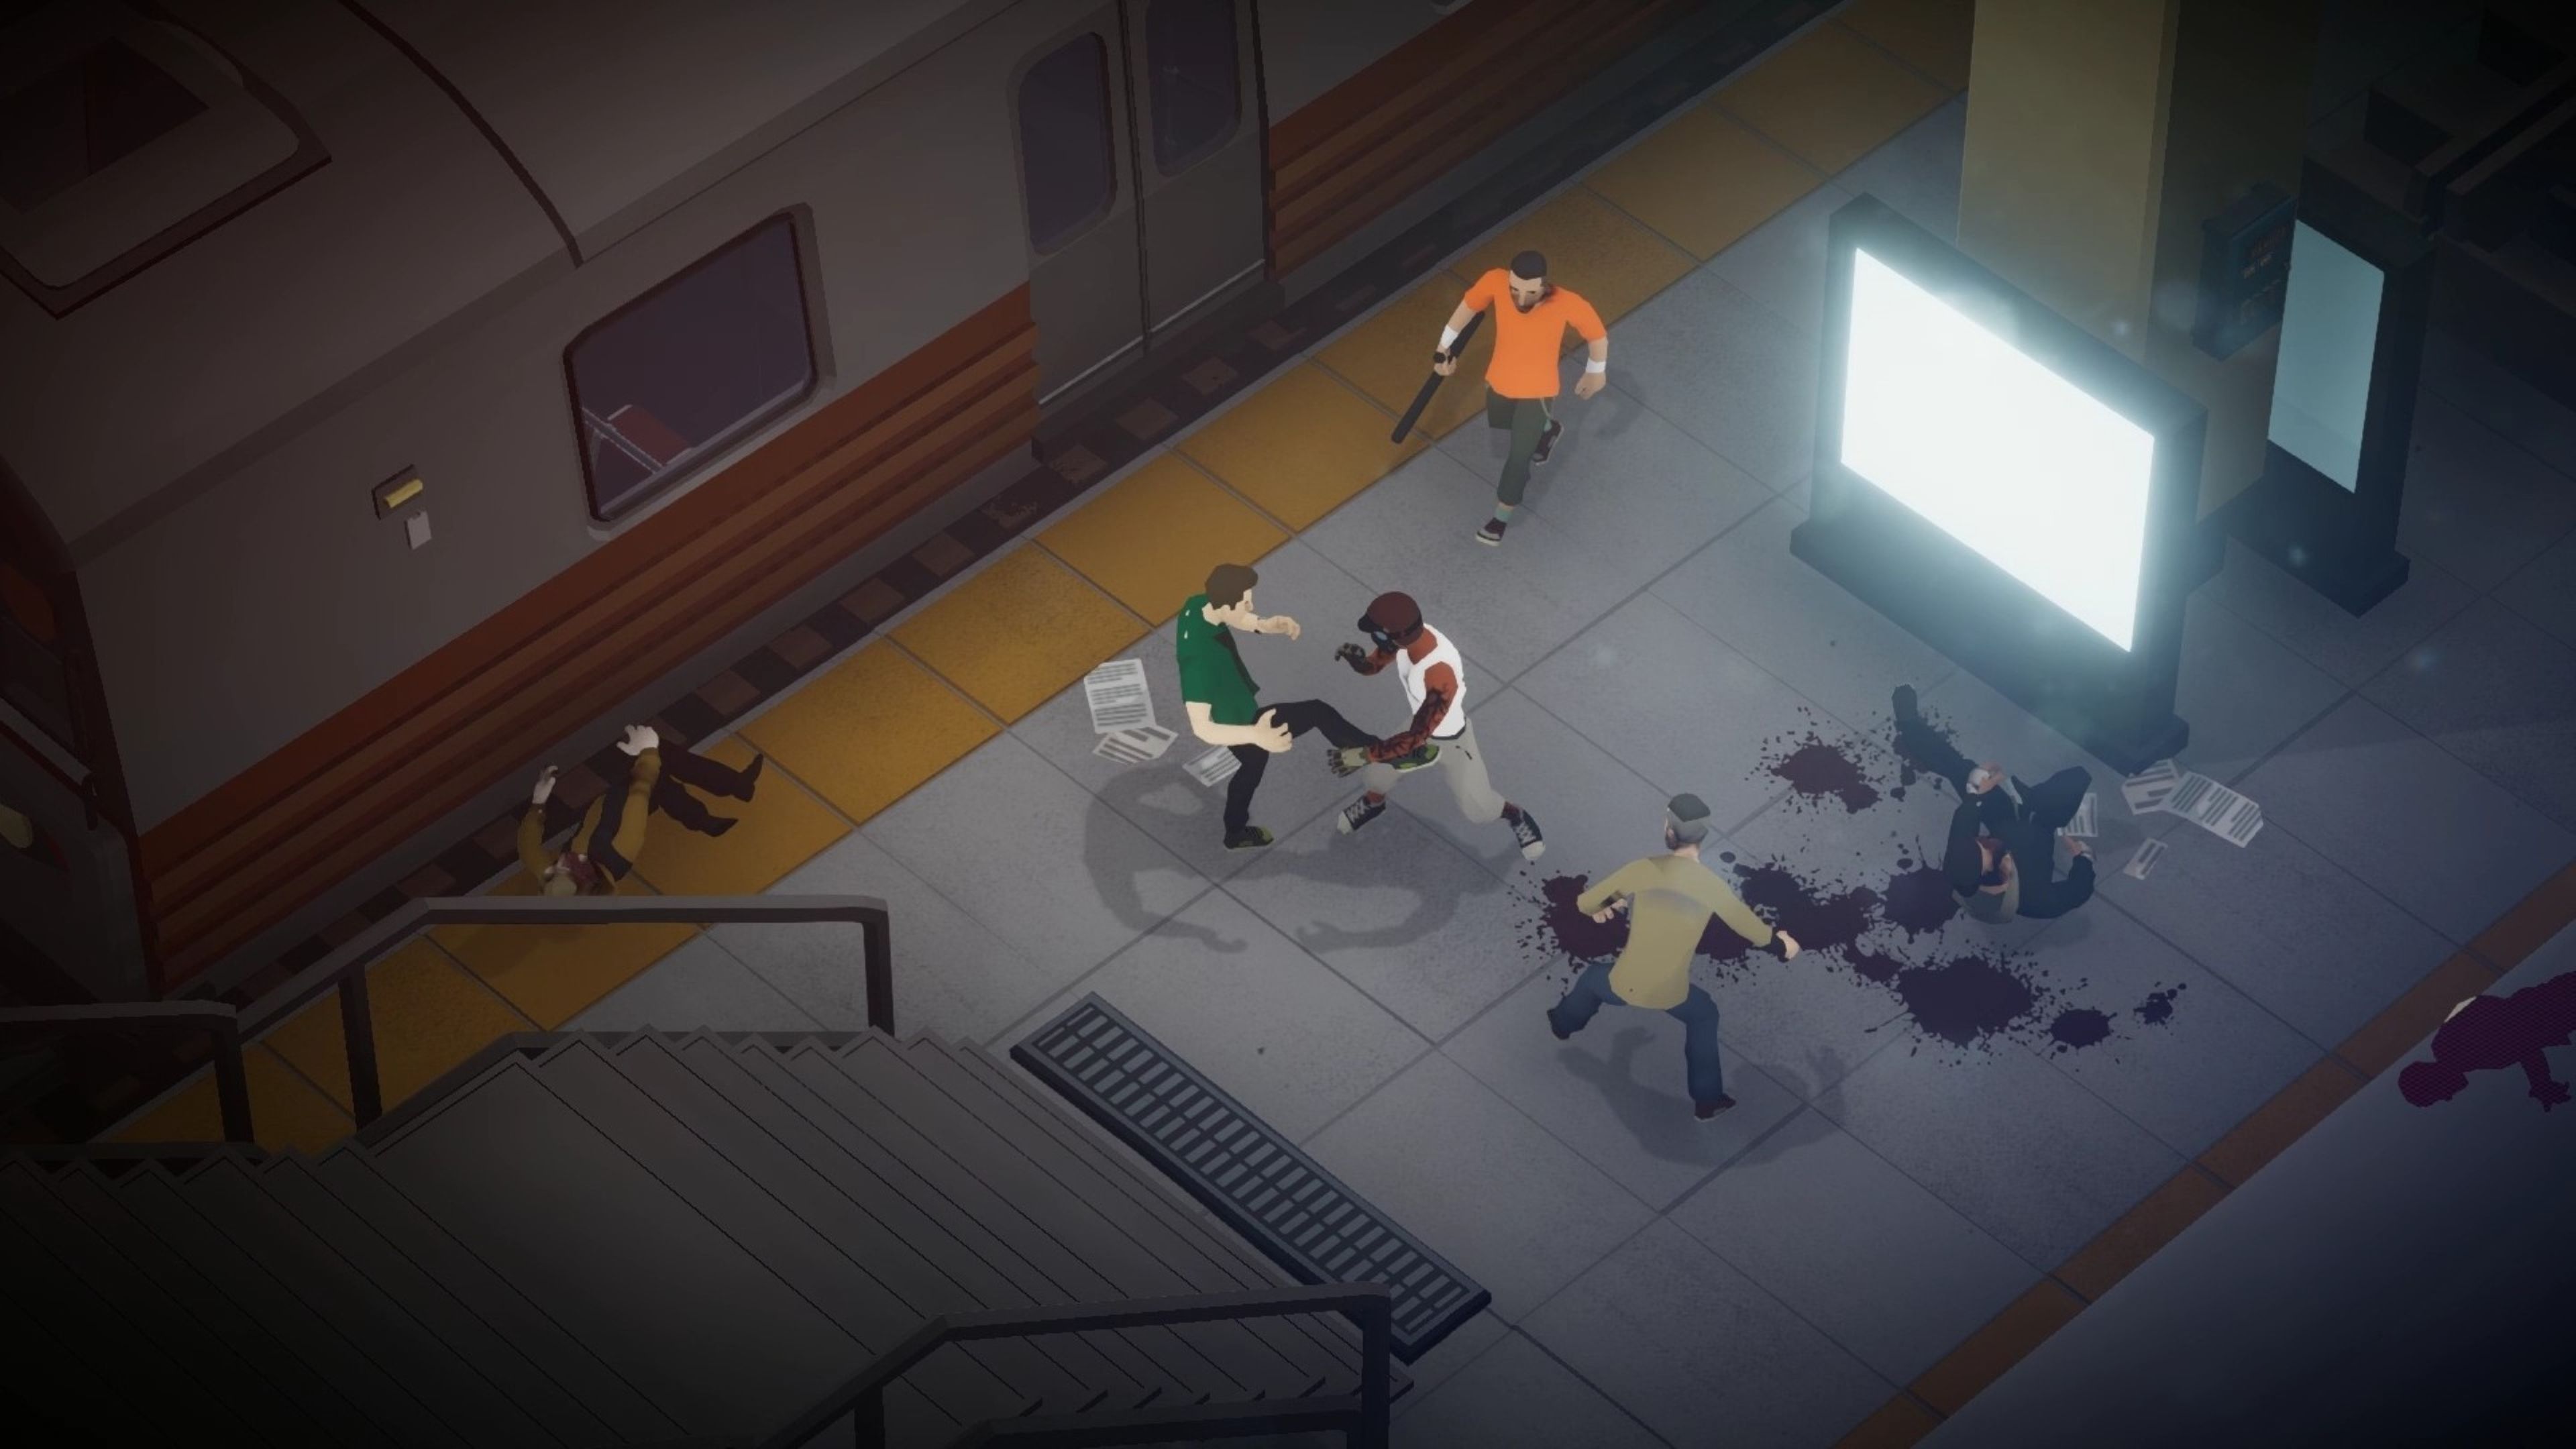 The Outlast Trials, el juego de terror multijugador, presentado en Gamescom  Opening Night Live